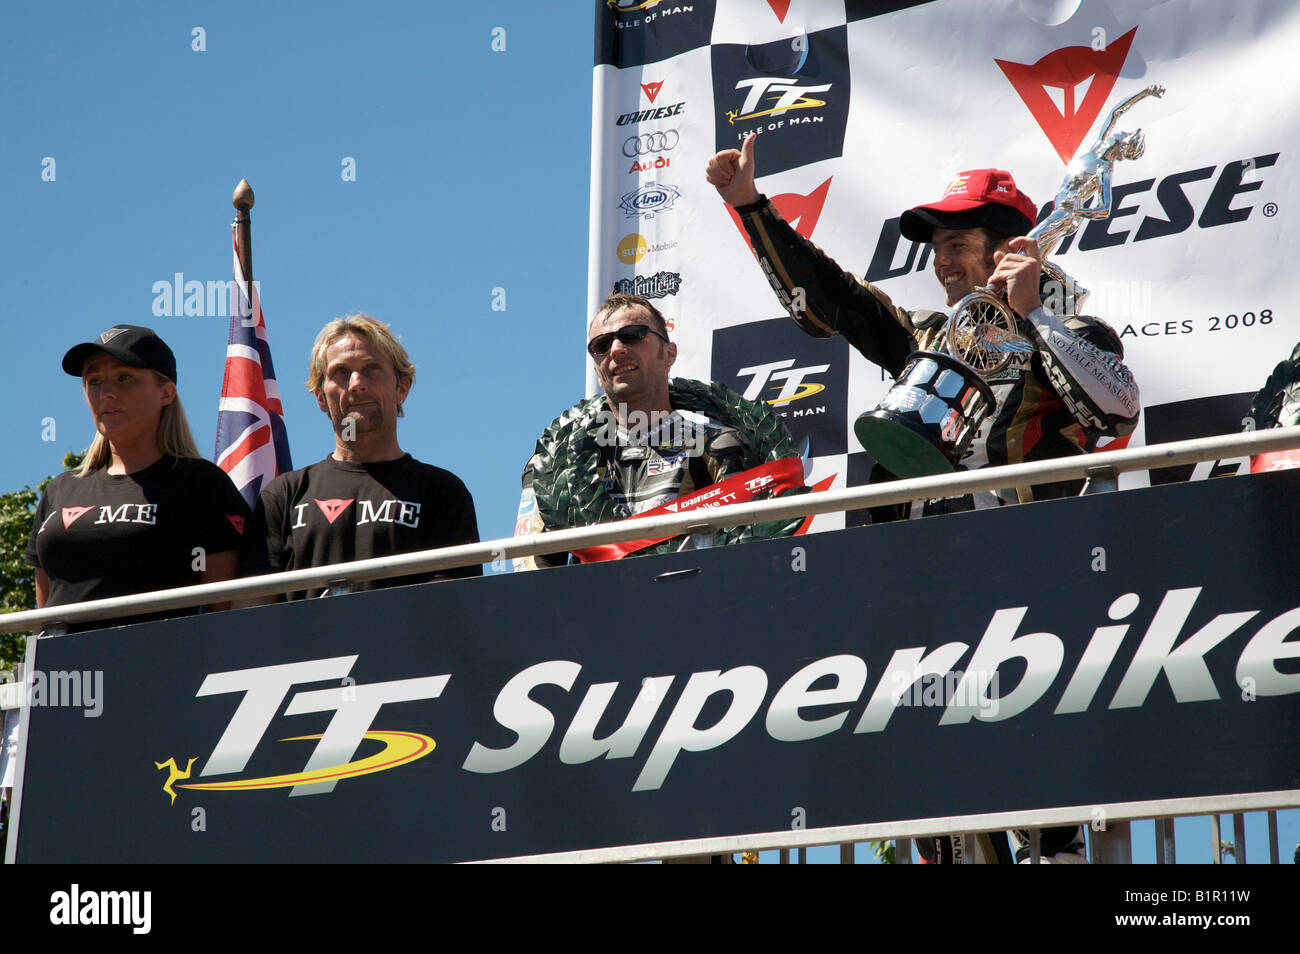 2008 Isle Of Man Dainese Superbike Race Sieger, australische Cameron Donald auf dem Podium nach Erhalt die Gewinner-Trophäe. Stockfoto